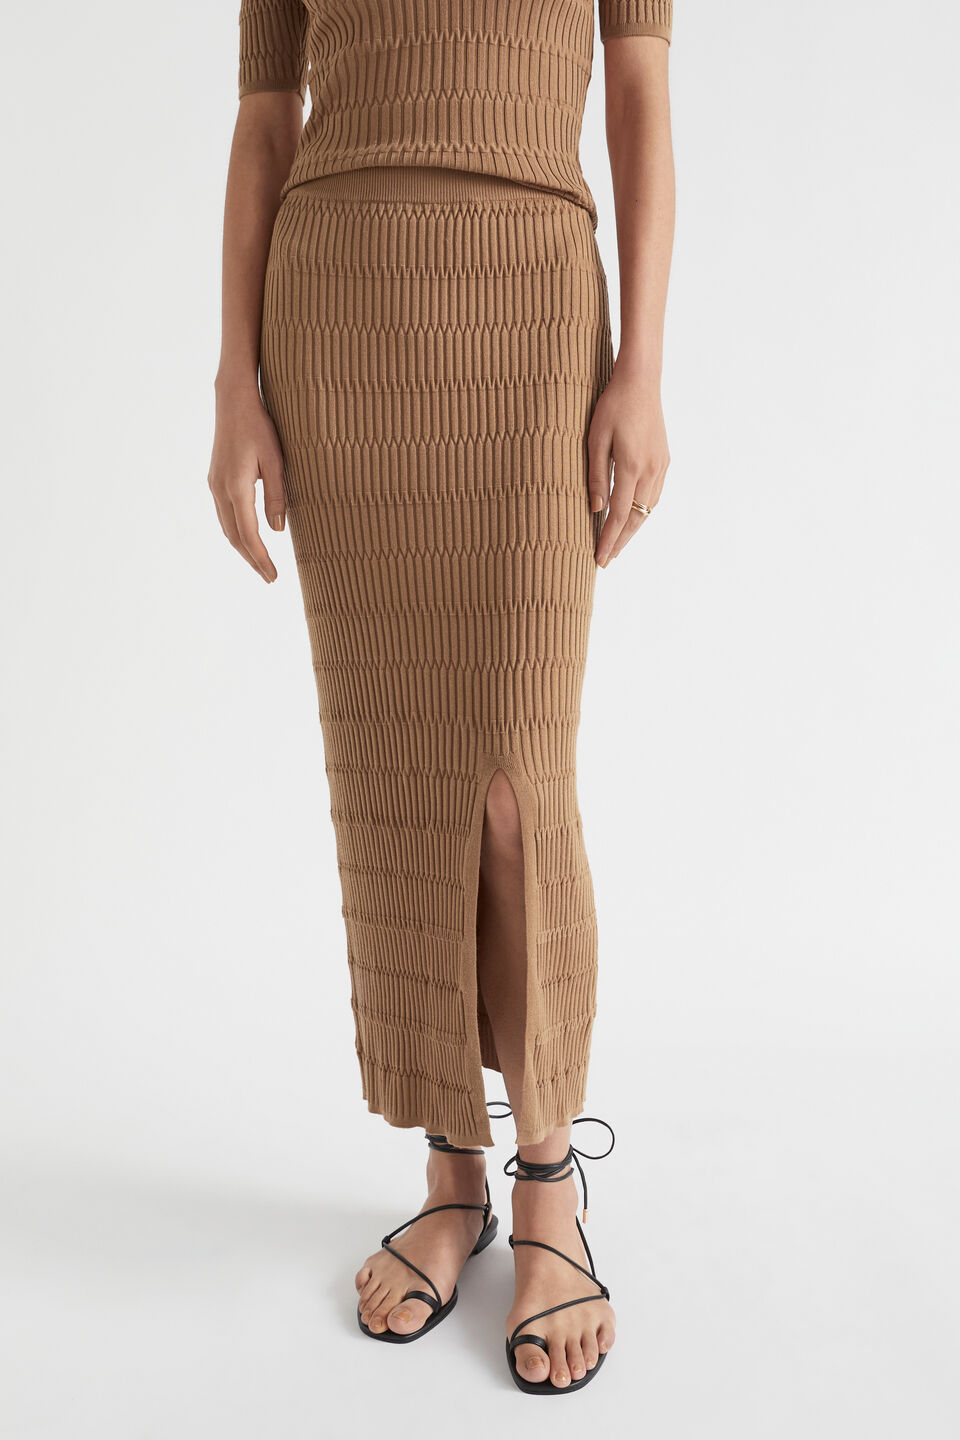 Jacquard Knit Midi Skirt  Auburn Brown